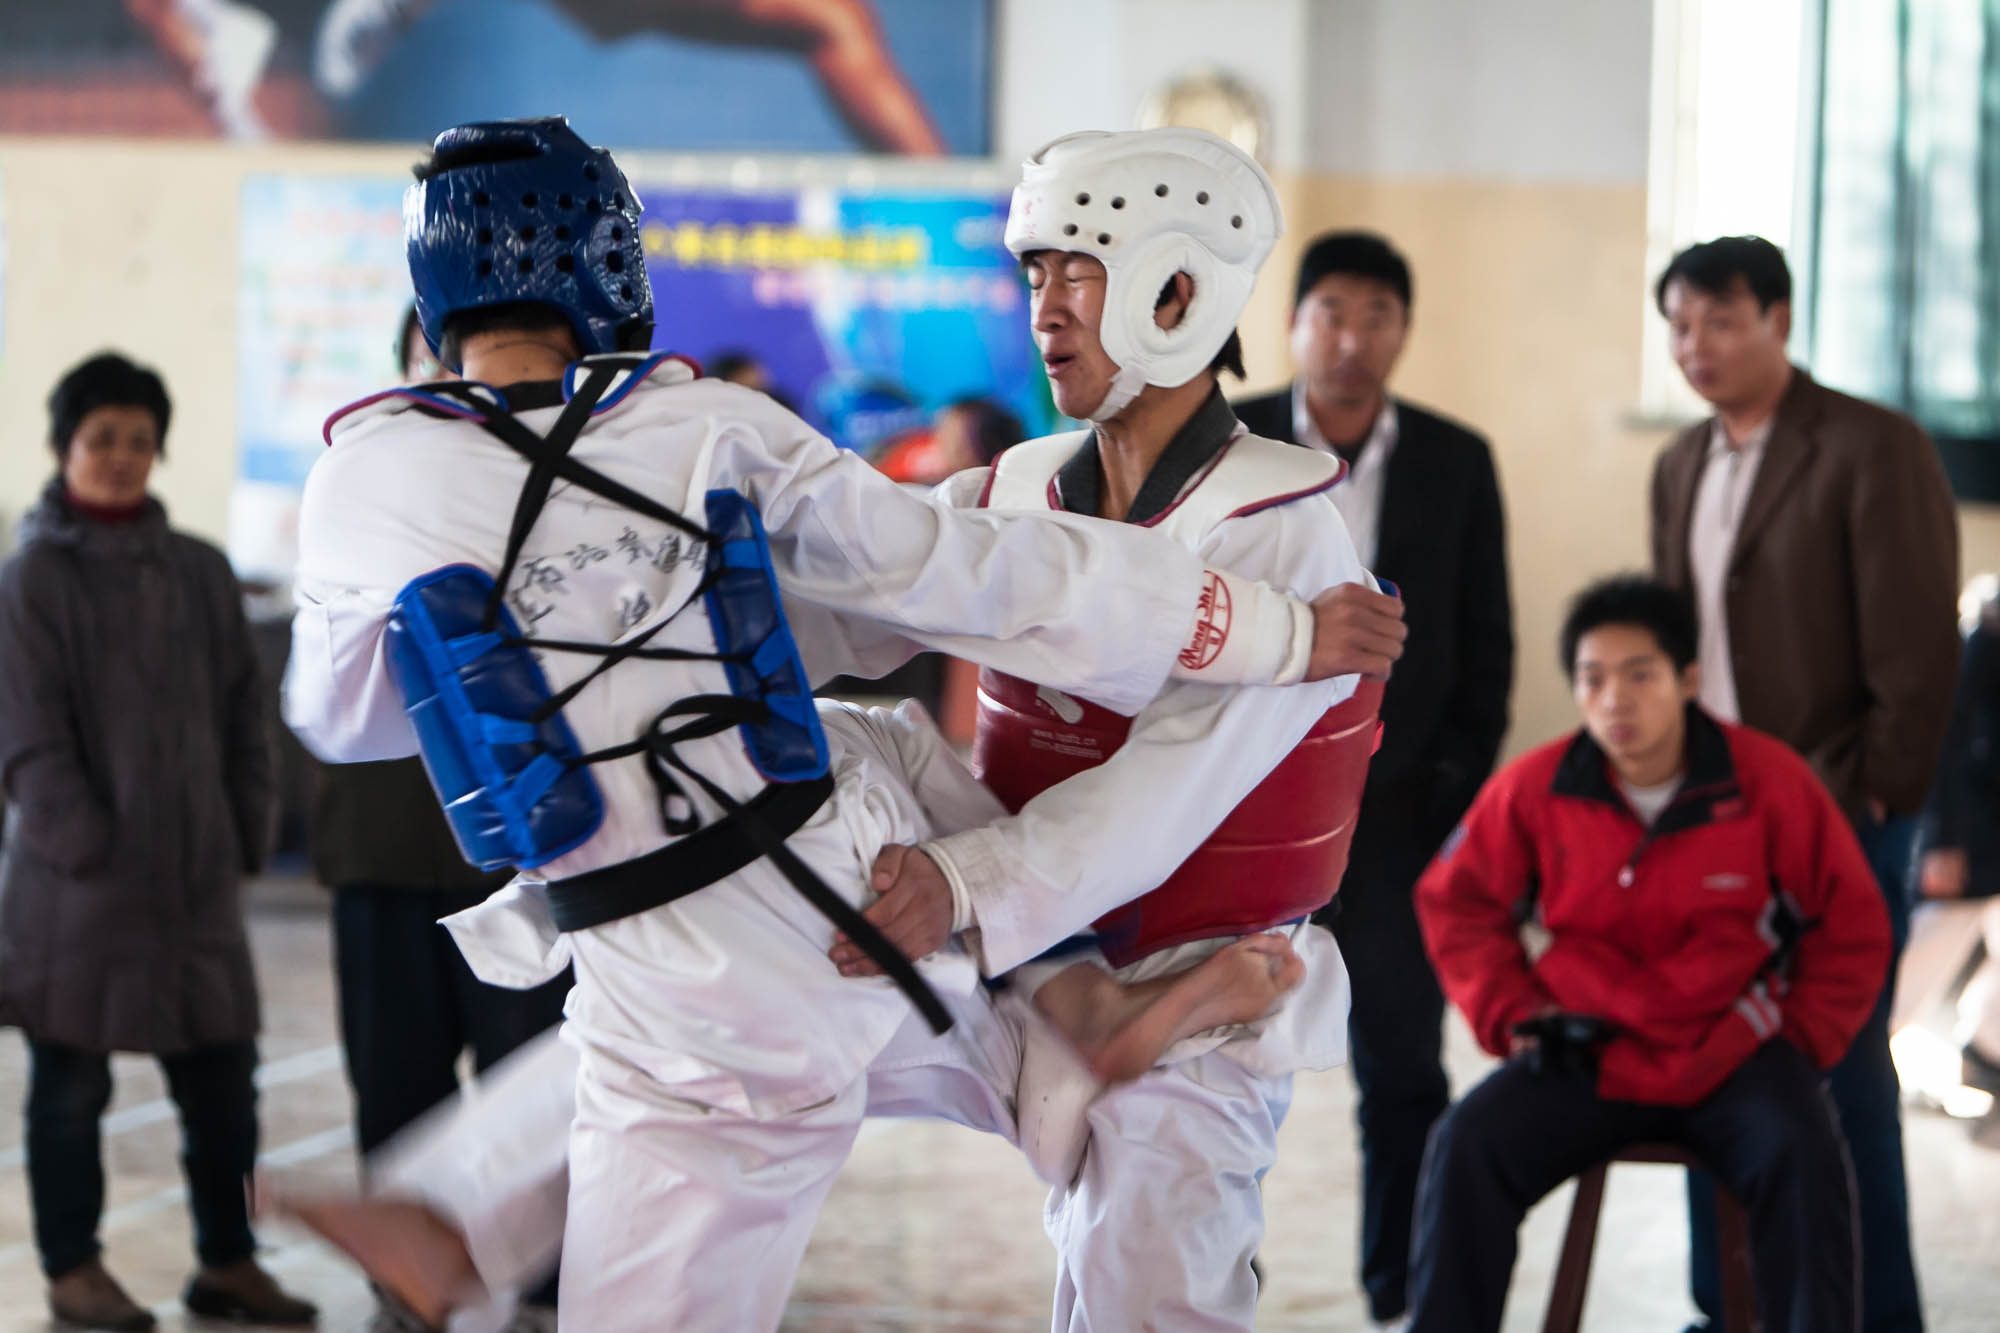 taekwondo tournament in Baoding